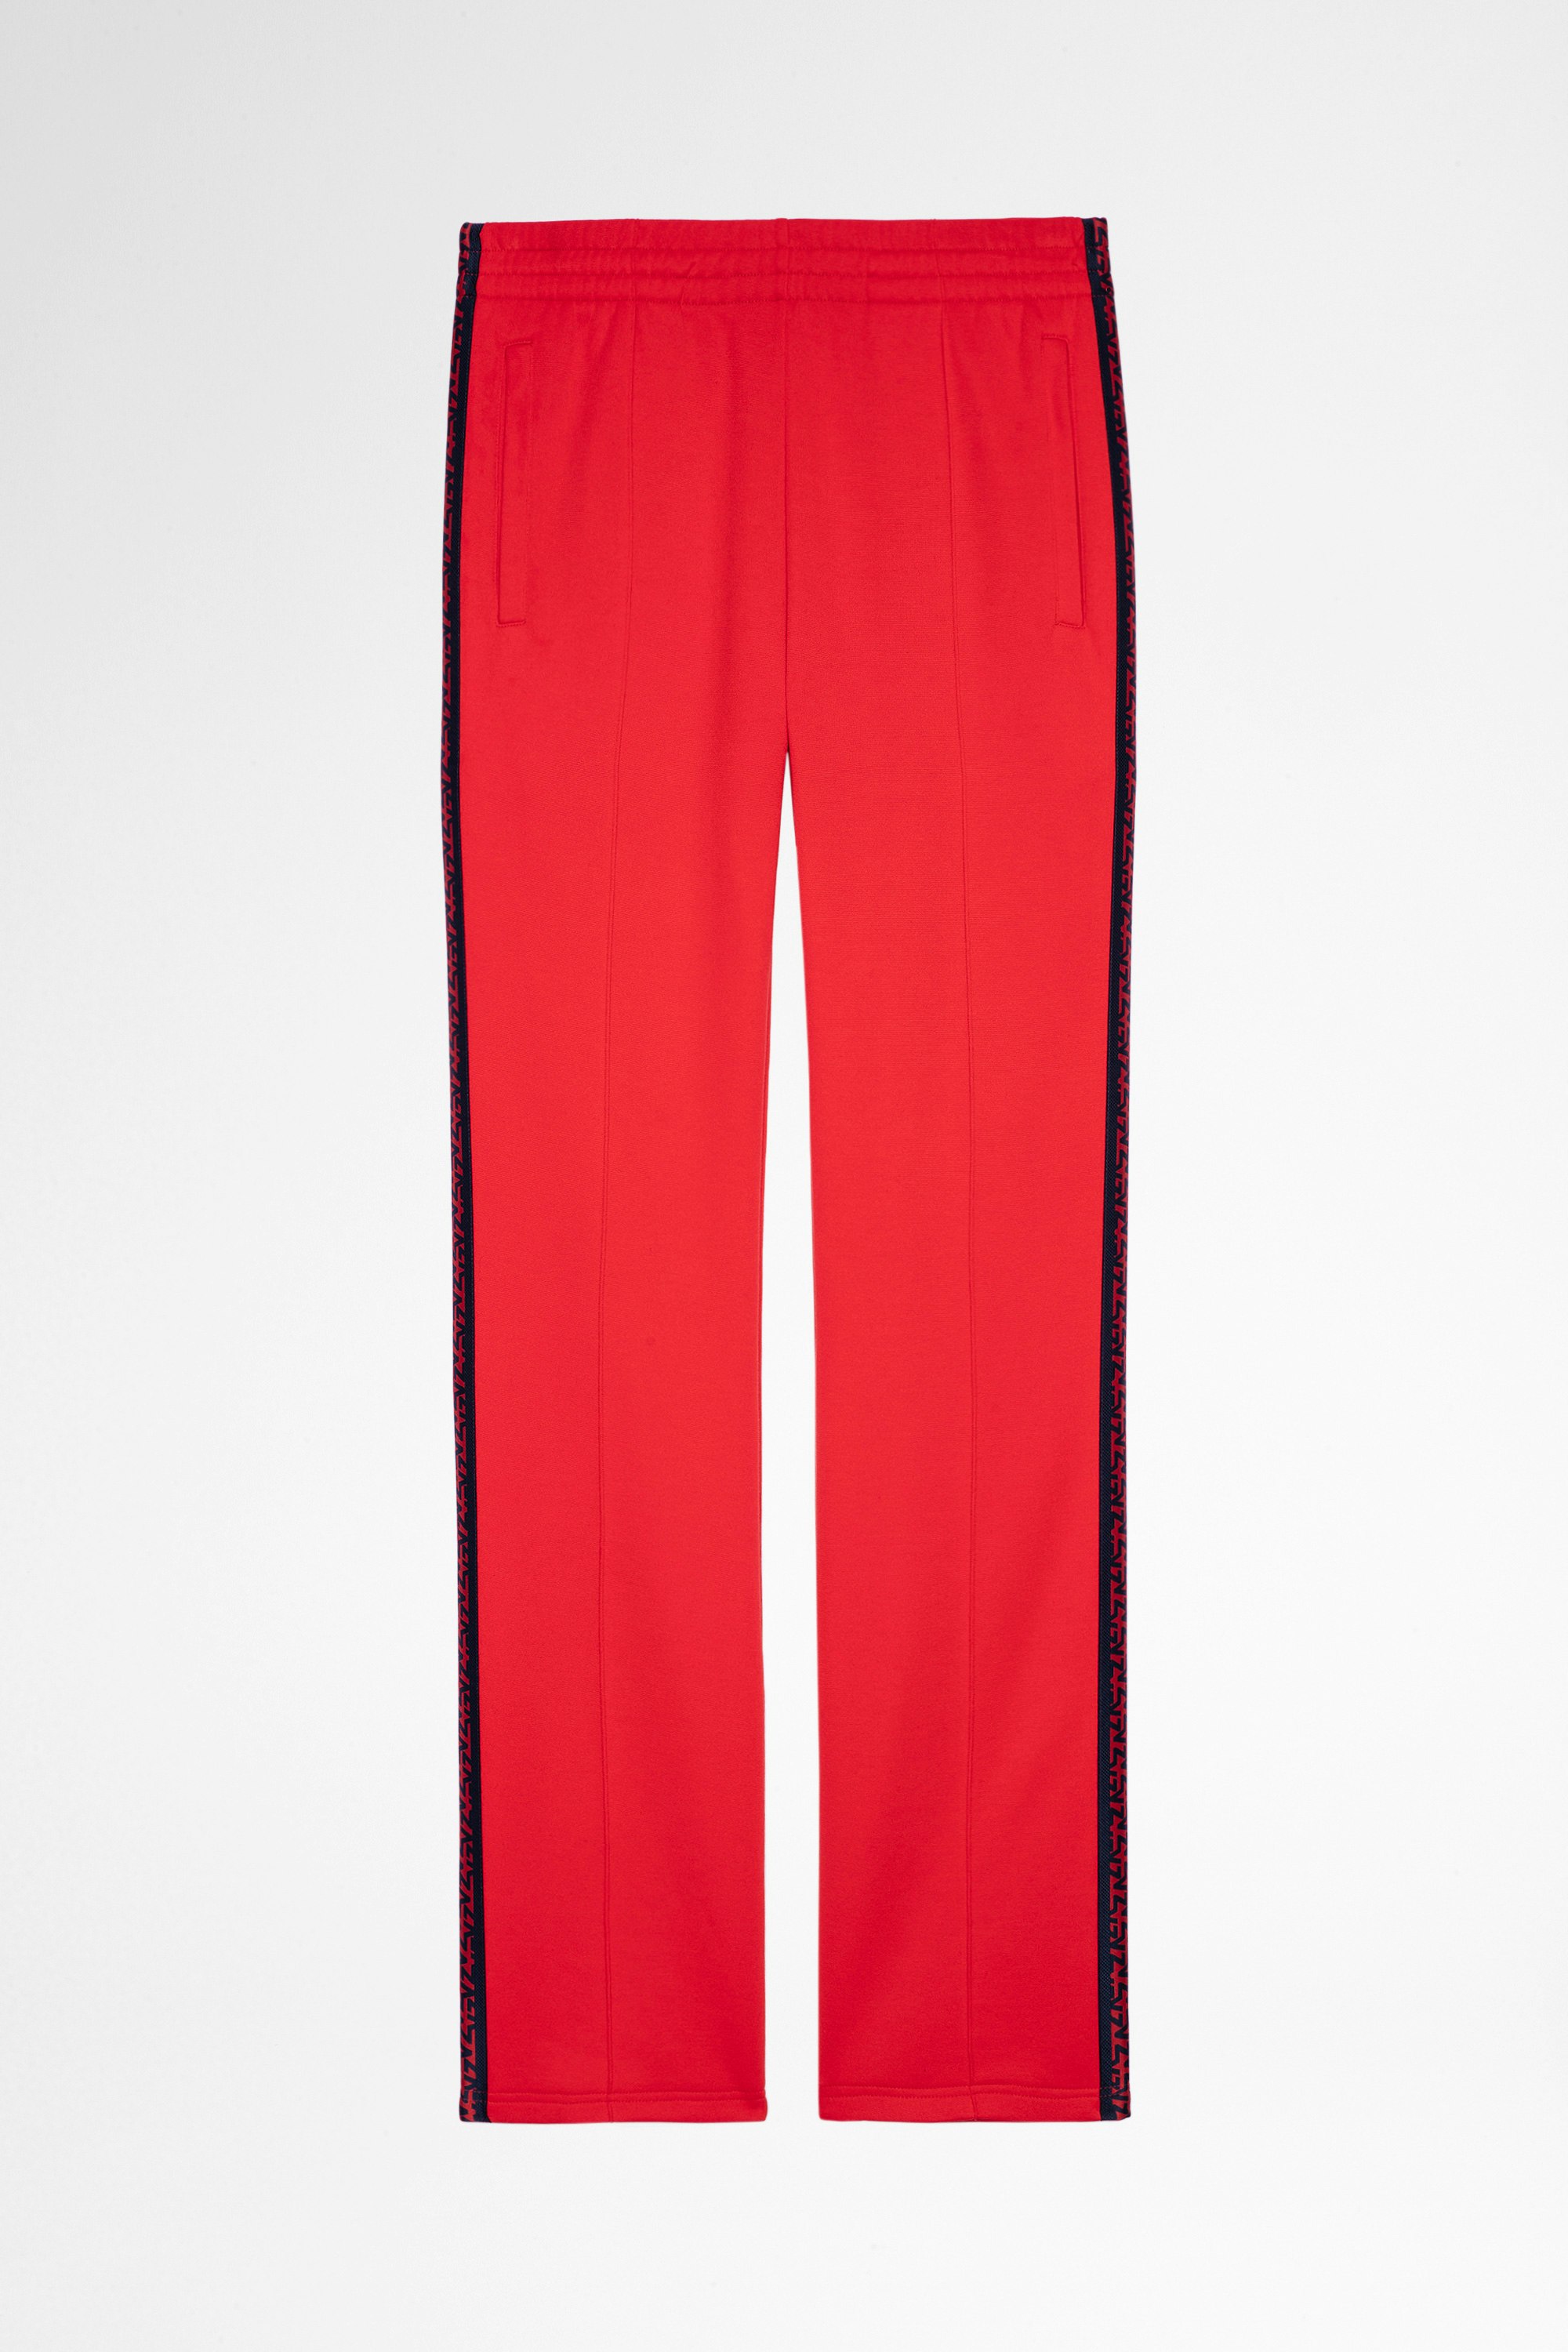 Pantaloni Chillyn Pantaloni svasati rossi con bande laterali, uomo. Reallizzato con fibre da agricoltura biologica